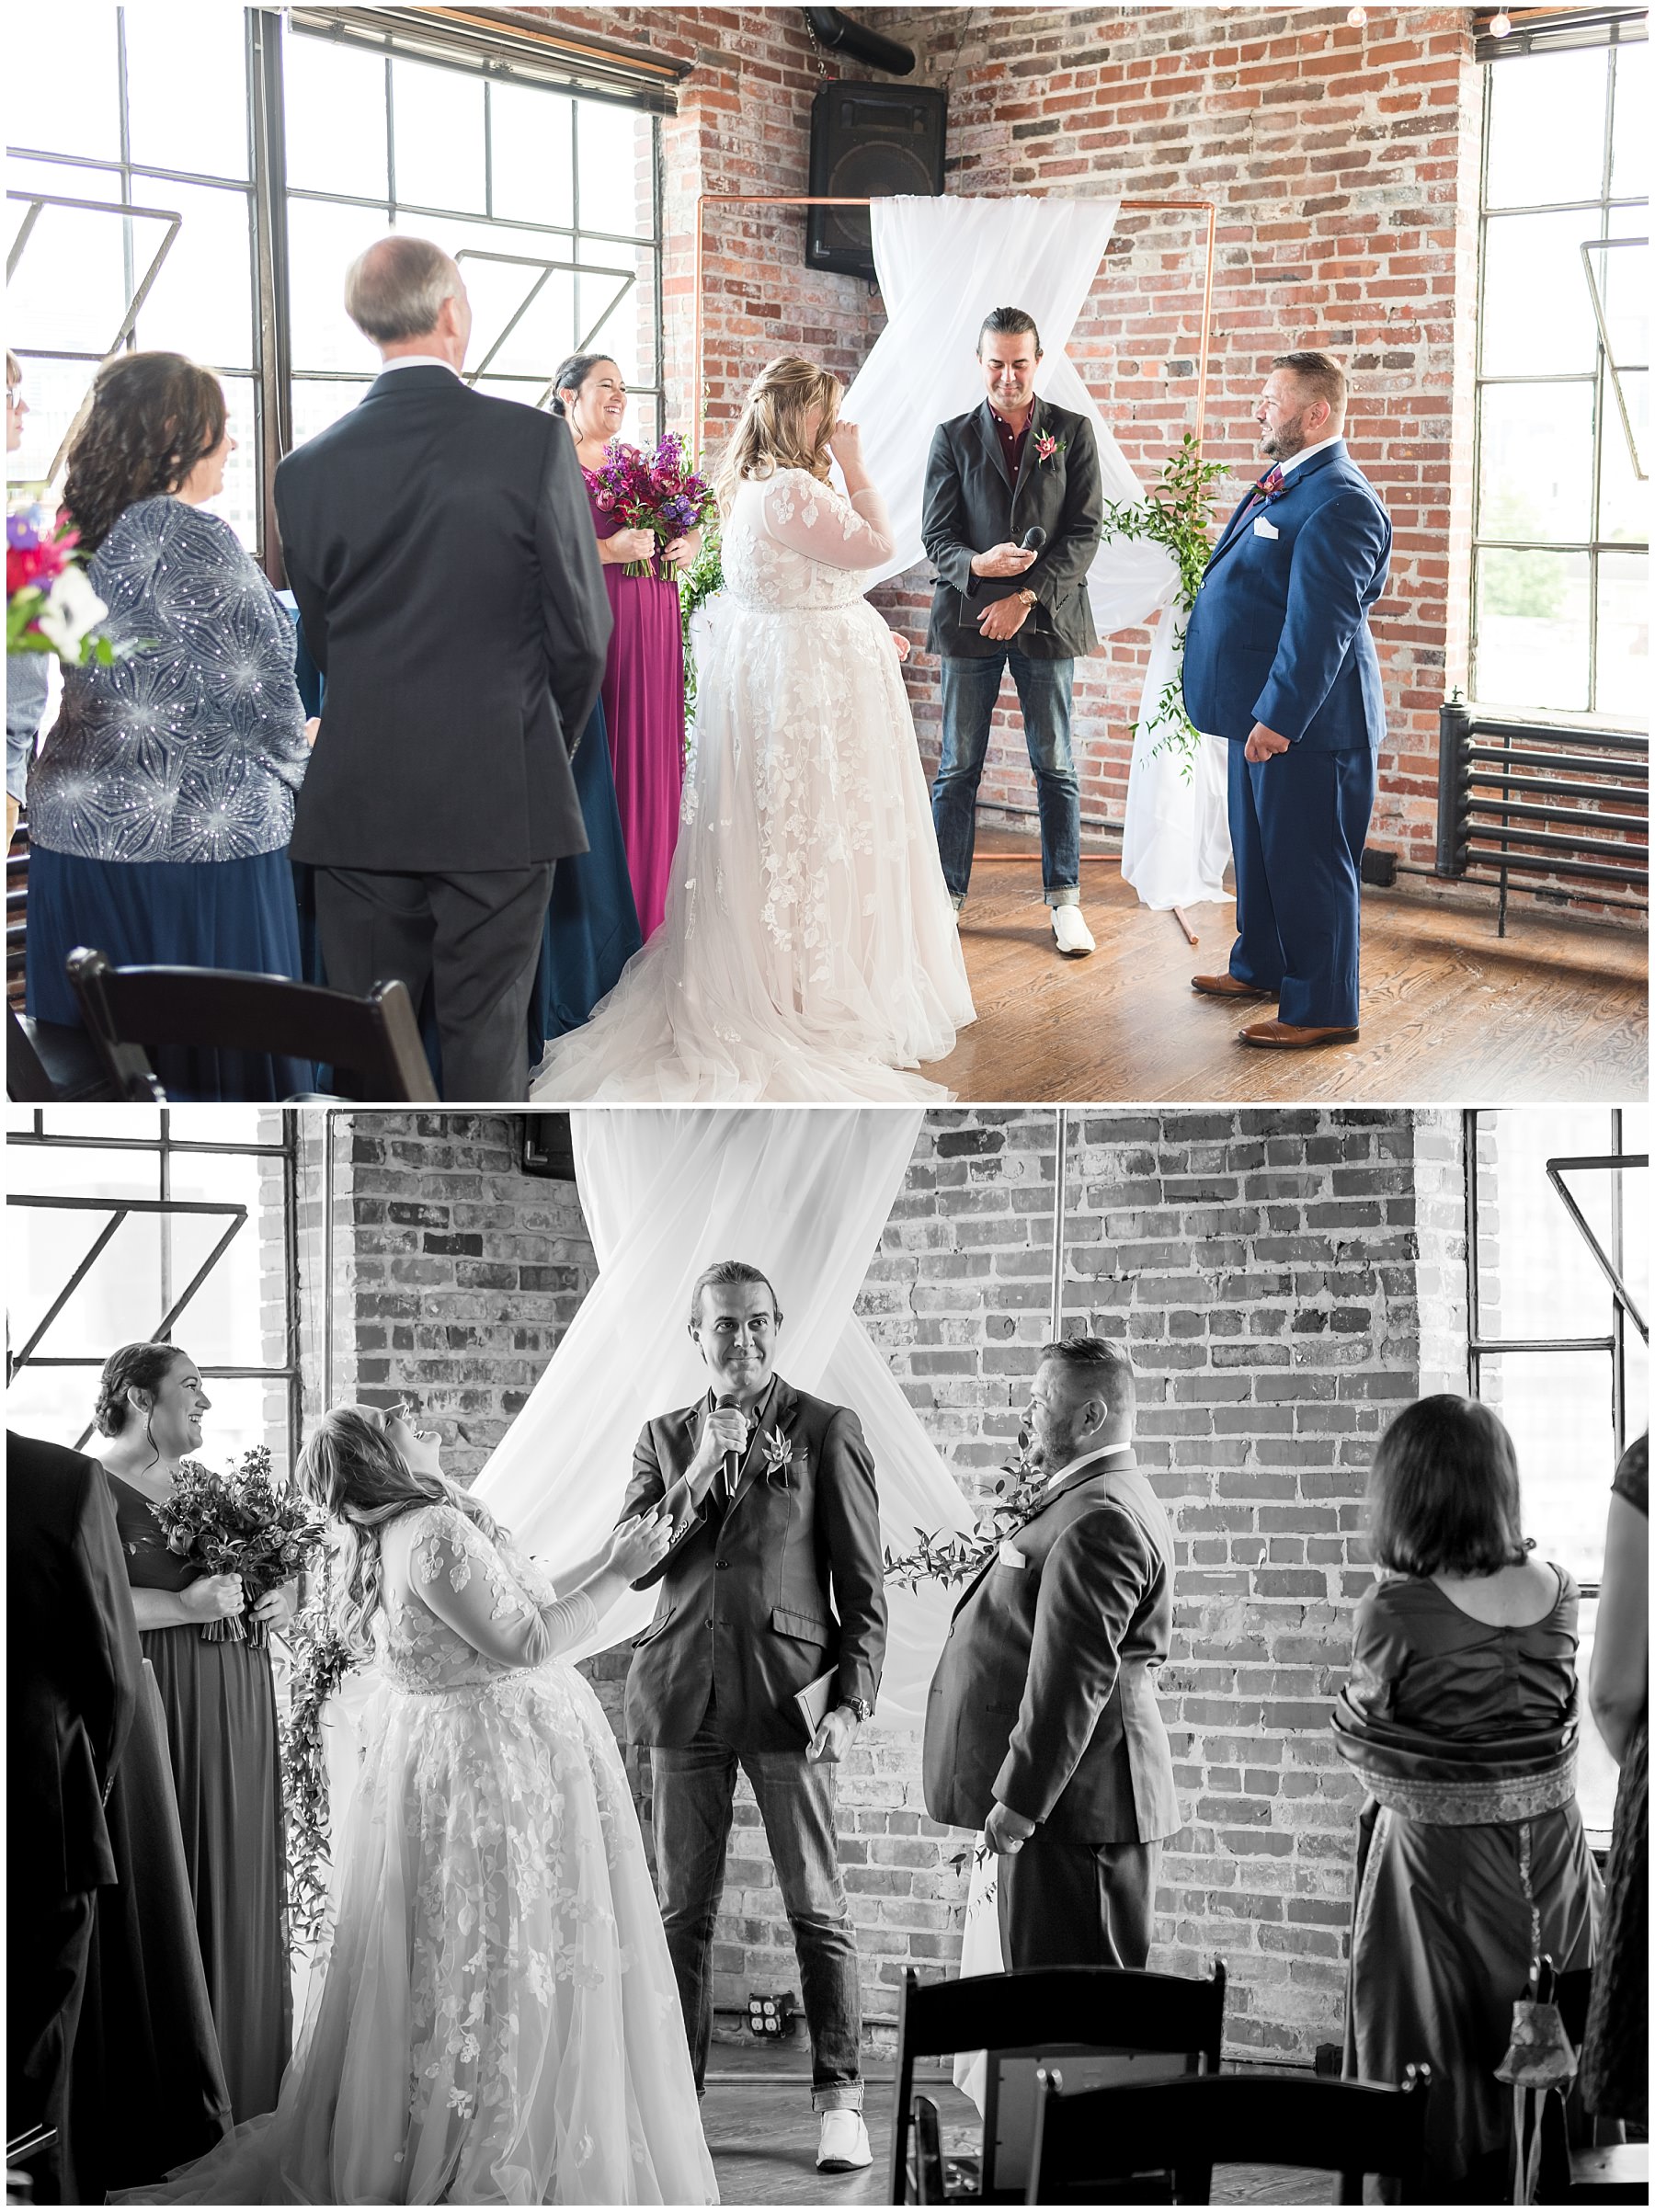 Nashville bride and groom wedding photos at Marathon Village.